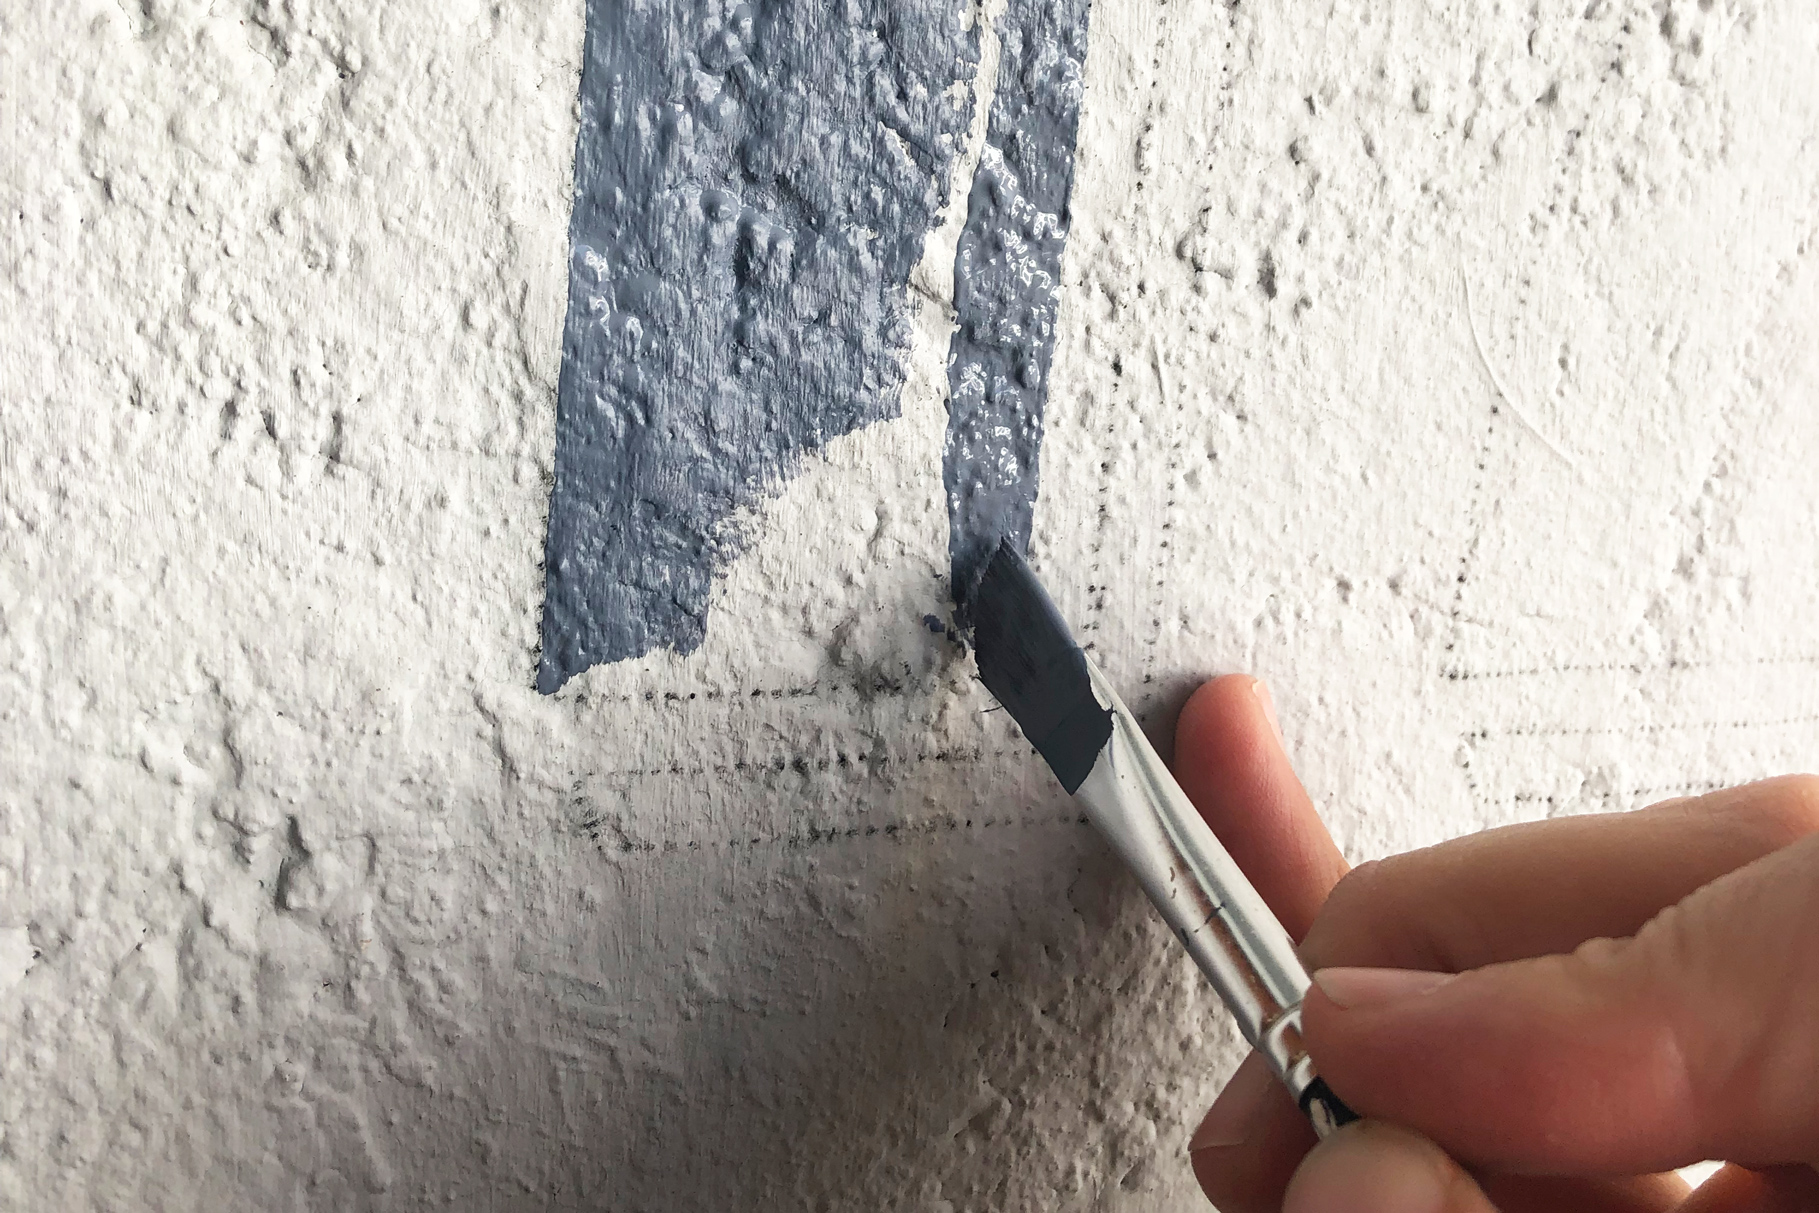 Traditionelle Schriftenmalerei wird von Hand auf Fassade gemalt